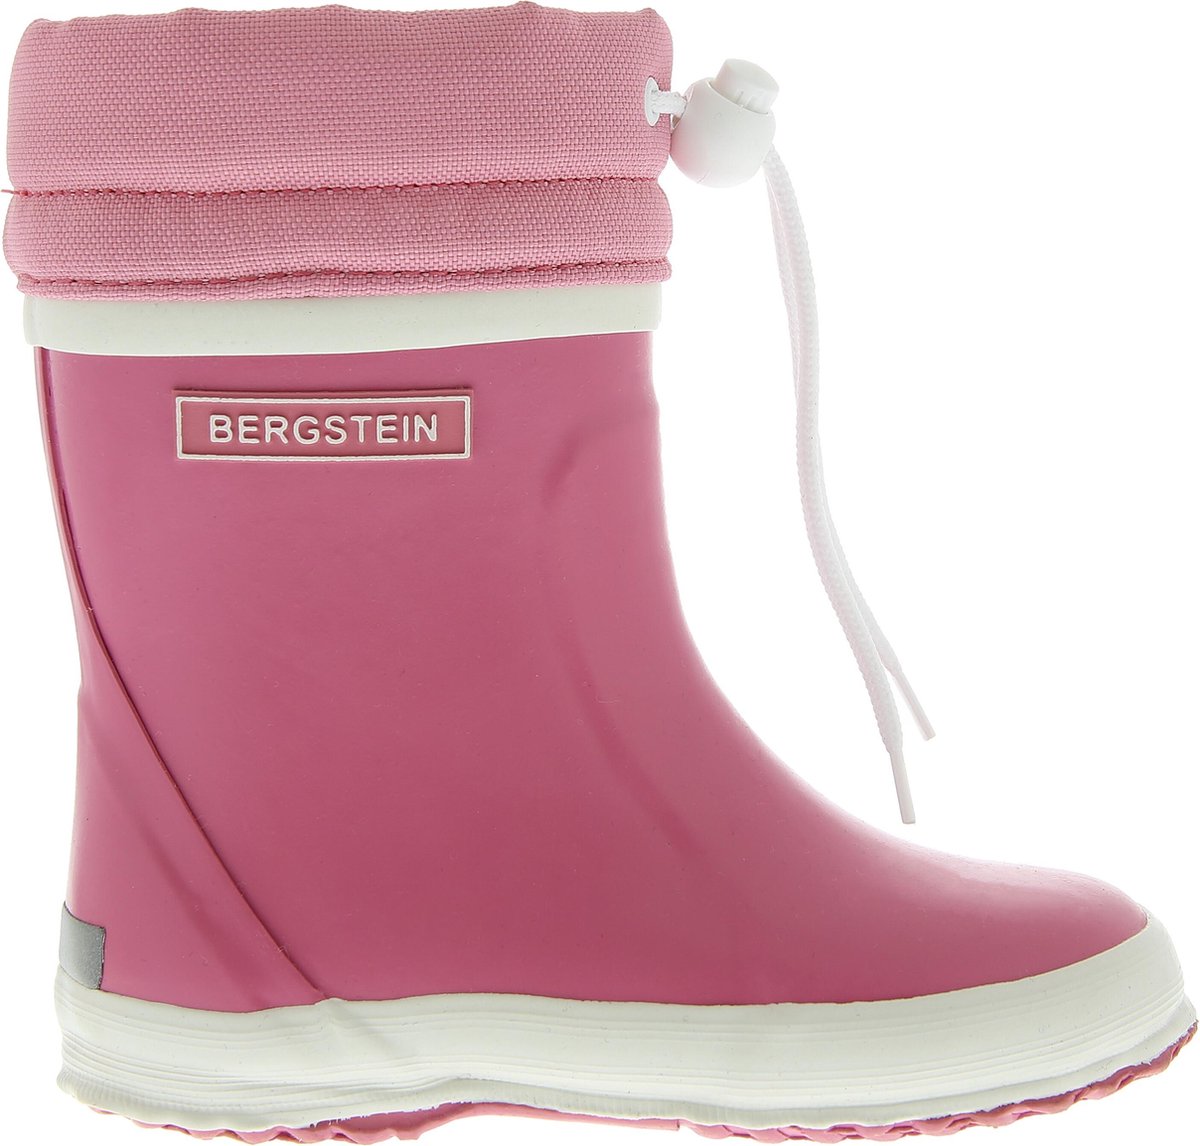 Bergstein - Bn Winterboot Pink - Roze